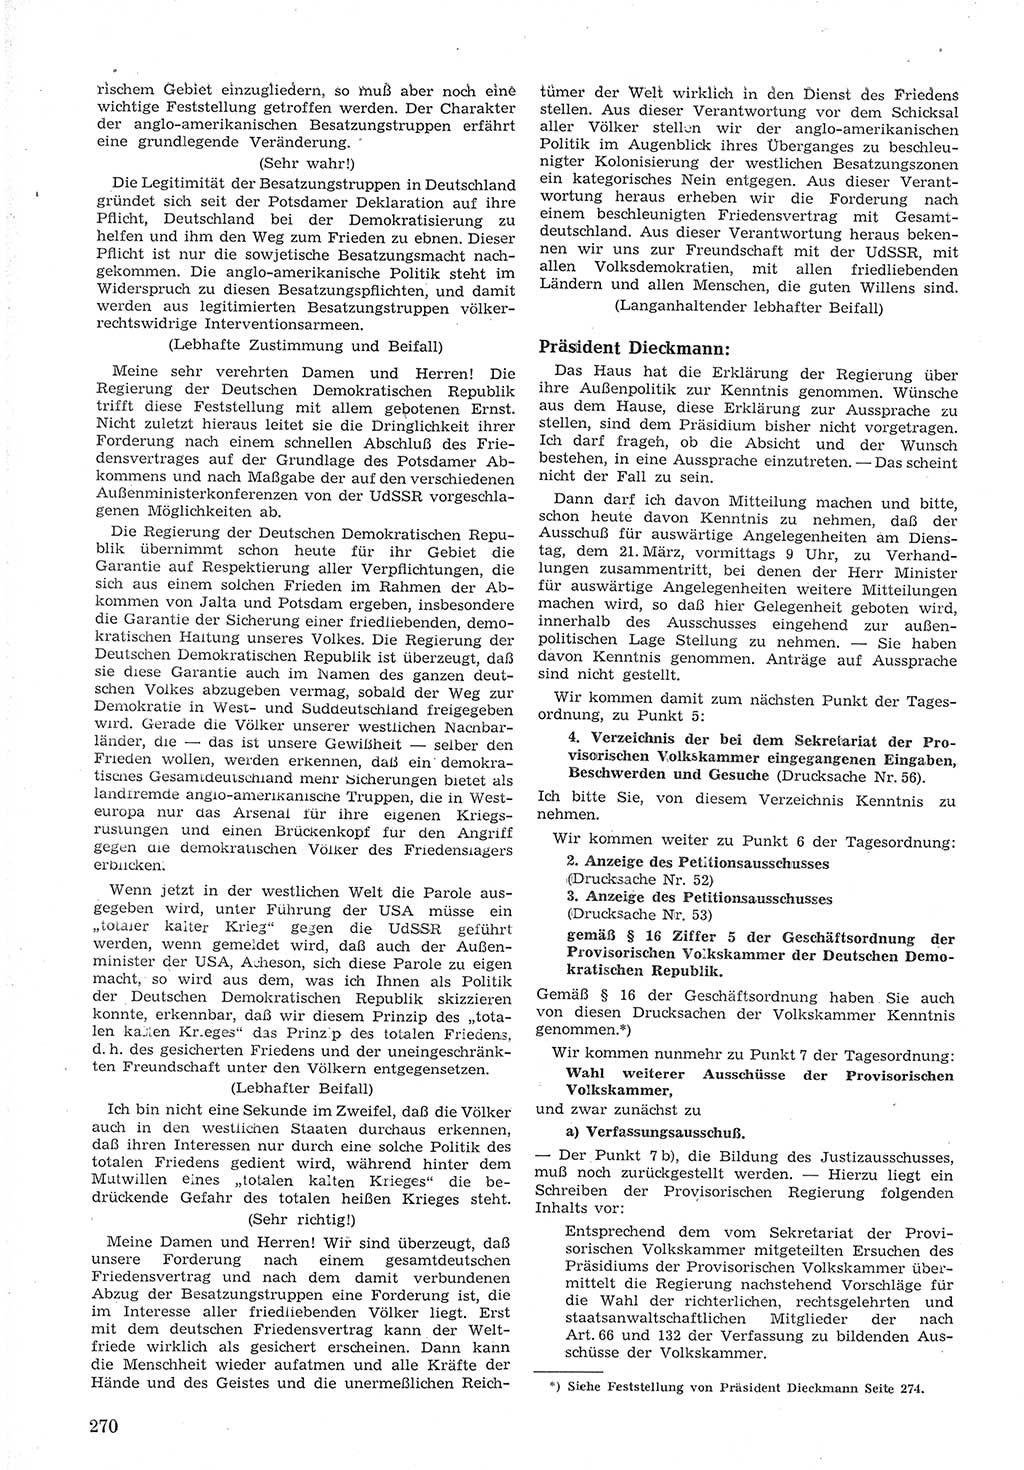 Provisorische Volkskammer (VK) der Deutschen Demokratischen Republik (DDR) 1949-1950, Dokument 284 (Prov. VK DDR 1949-1950, Dok. 284)